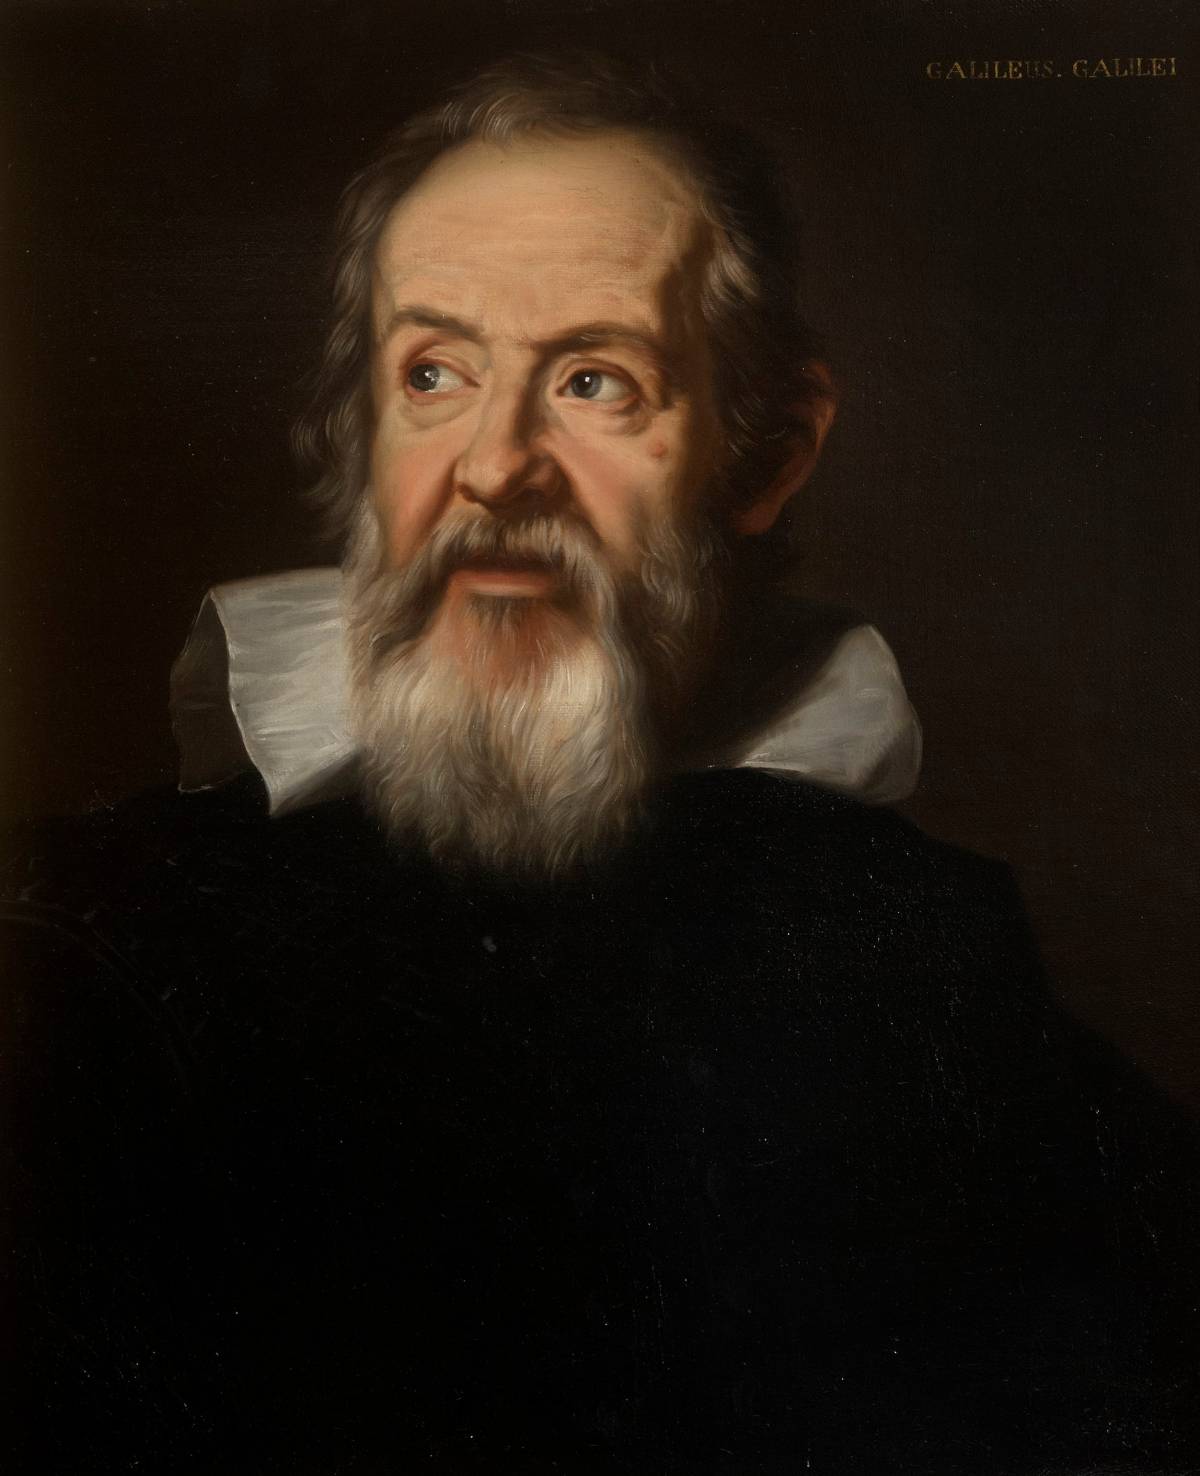 Così il "Saggiatore" di Galileo 400 anni fa cambiò la Storia